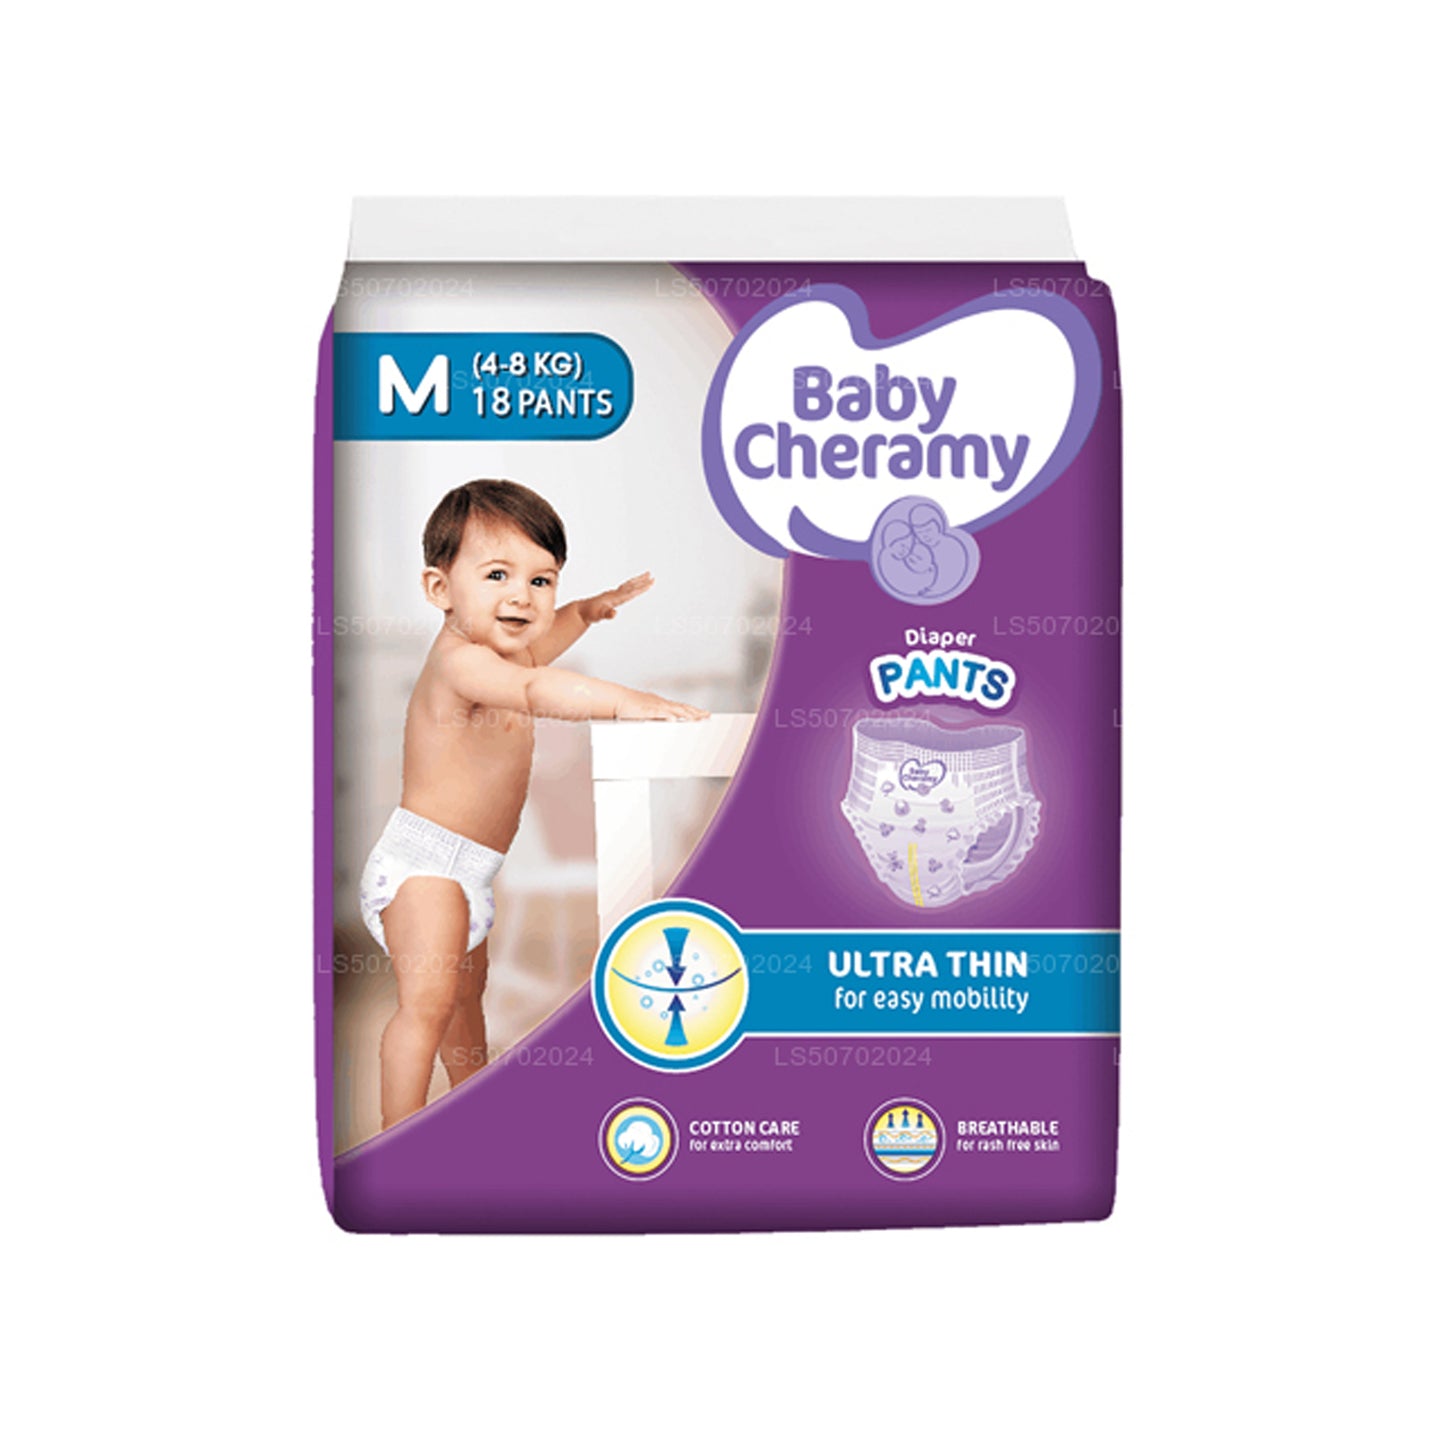 Baby Cheramy Baby Diaper Pants (18 Pack)